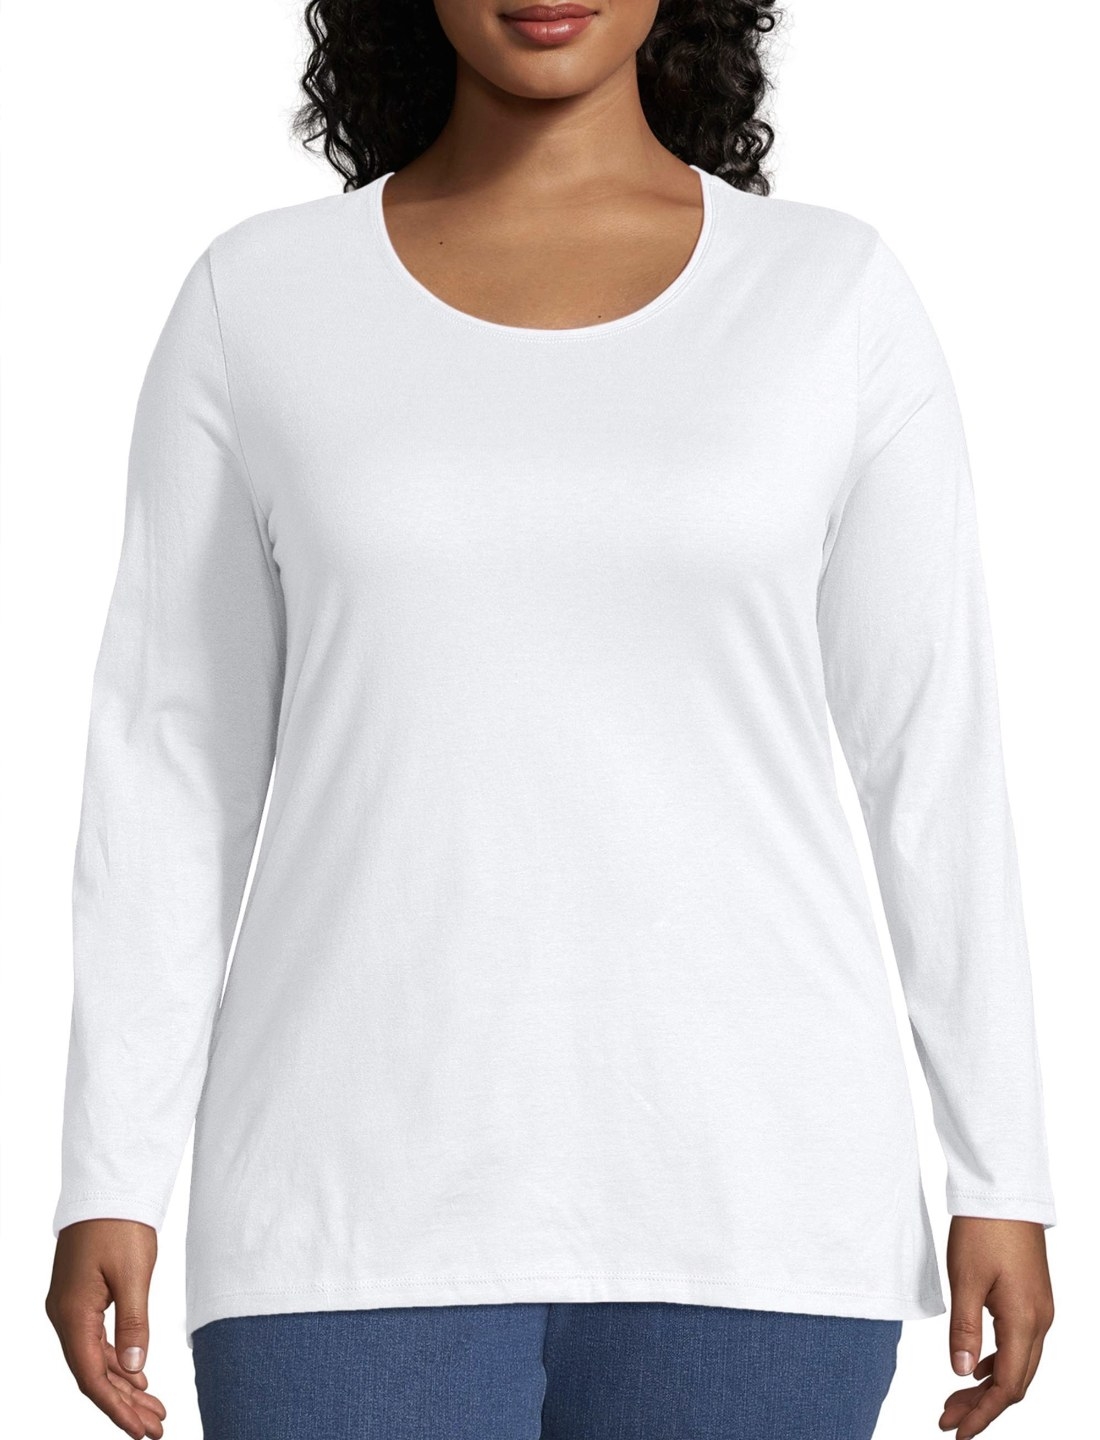 Model in the plain long-sleeve white shirt